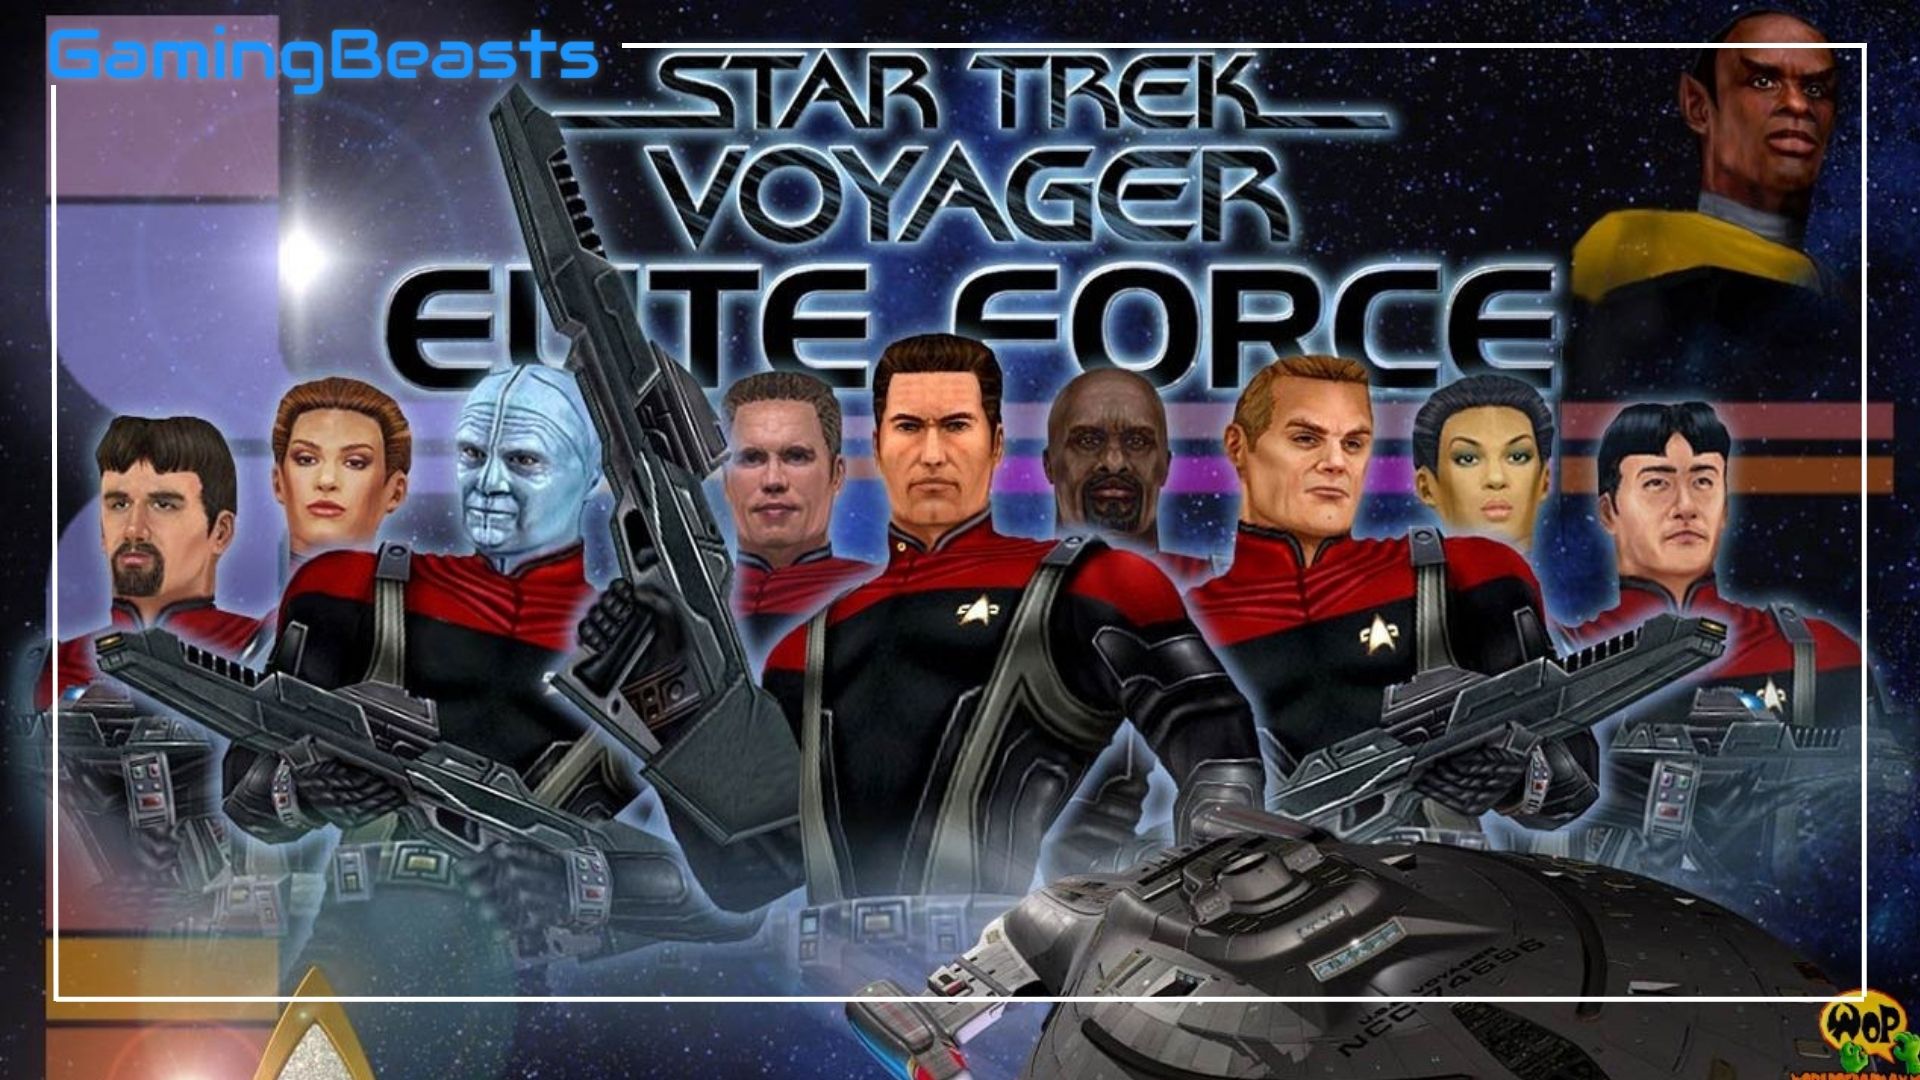 download star trek voyager elite force